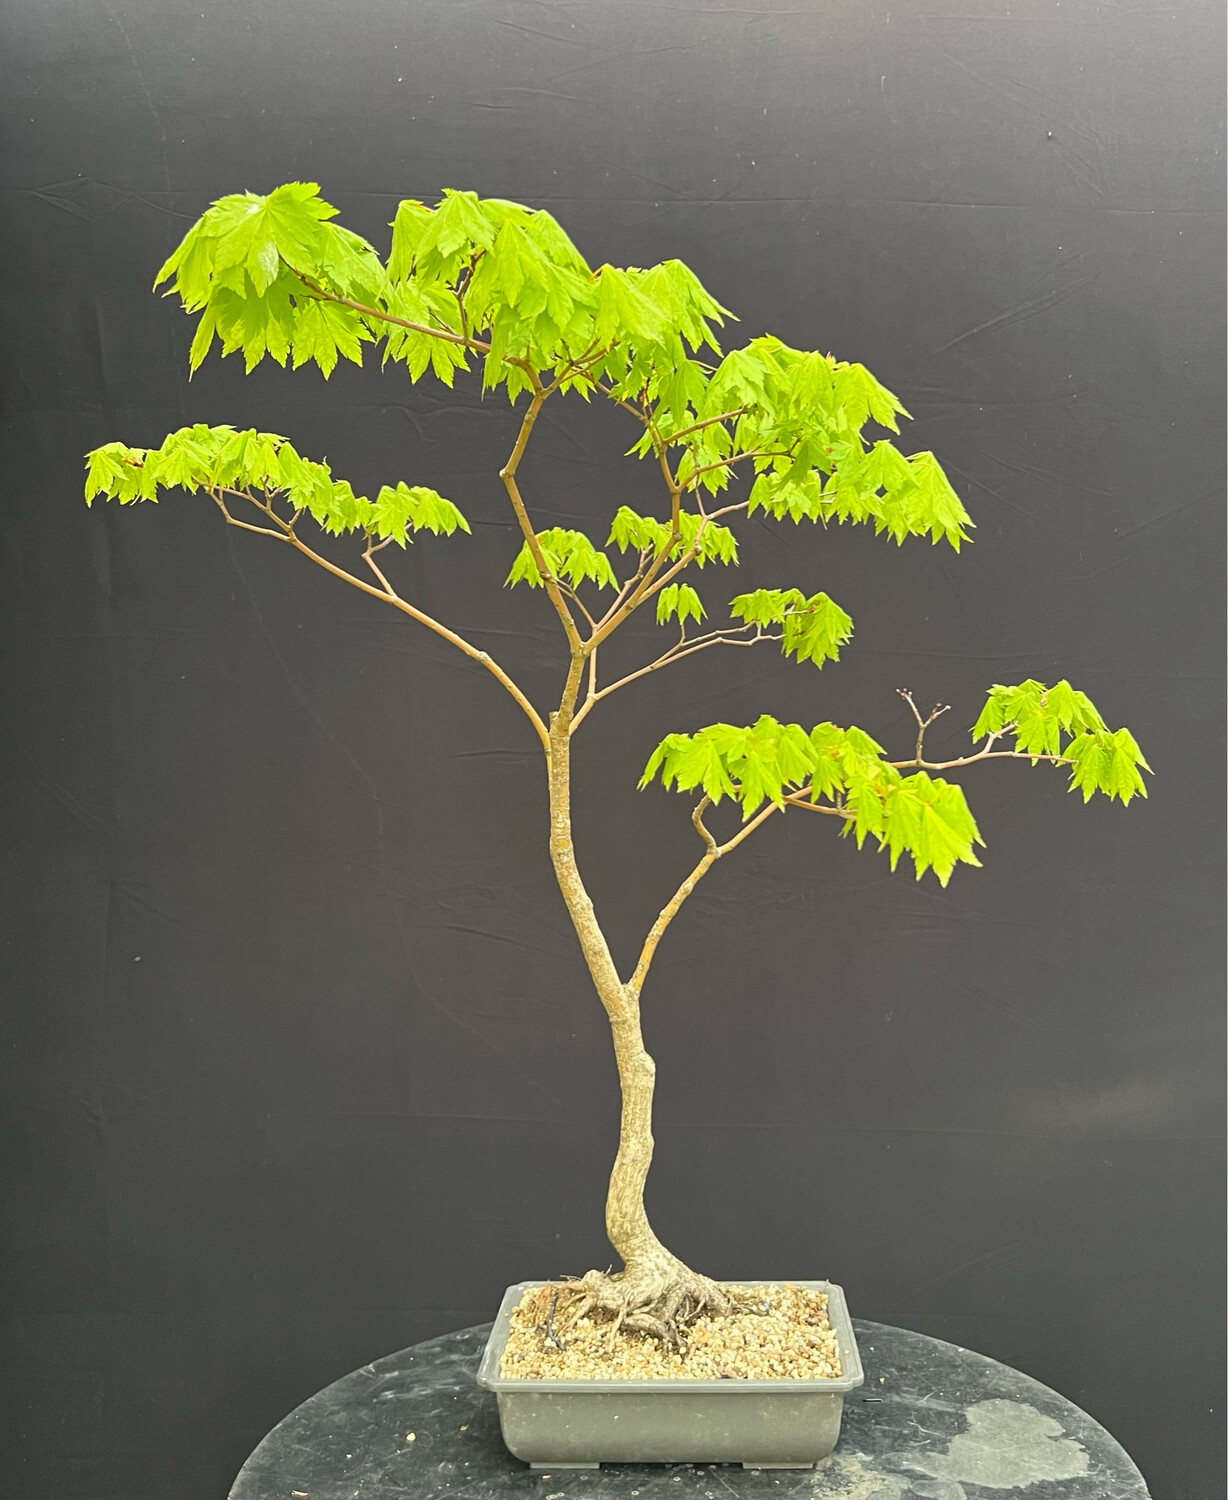 Acer palmatum shirasawanum jordan/ Jordan Full Moon Japanese Maple bonsai (green leaf)